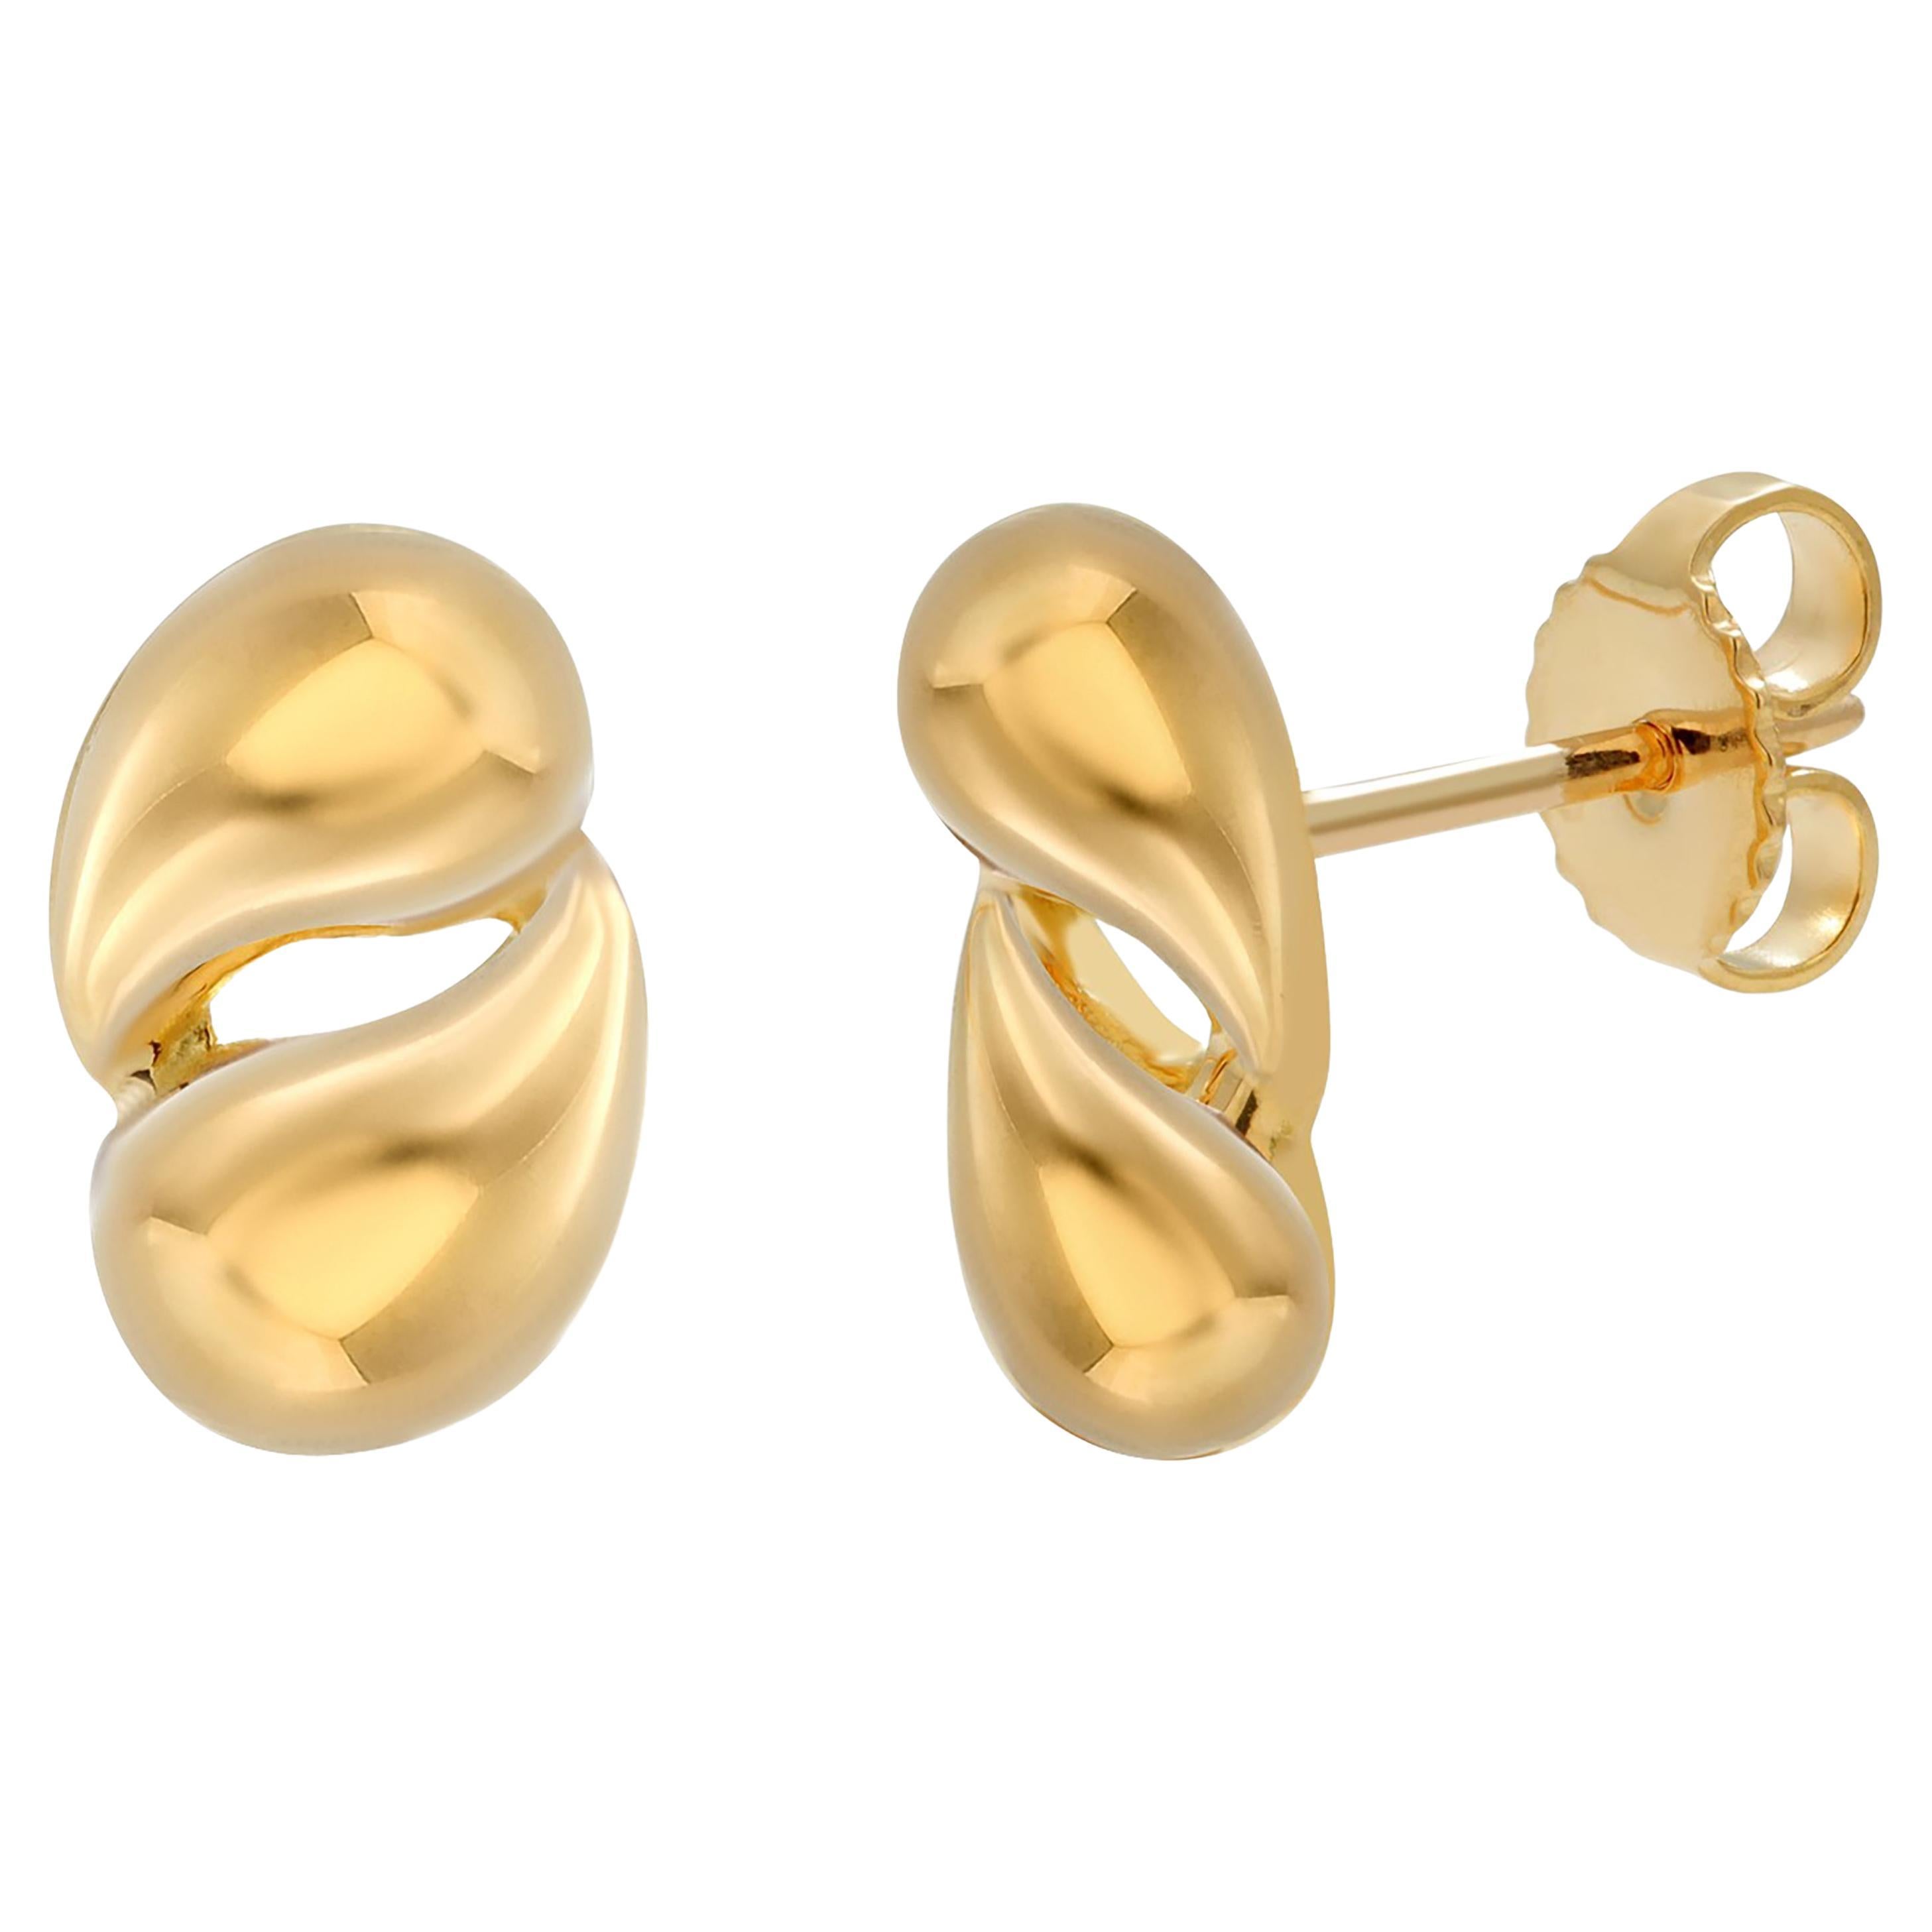 Tiffany Elsa Peretti Bean Design Earrings